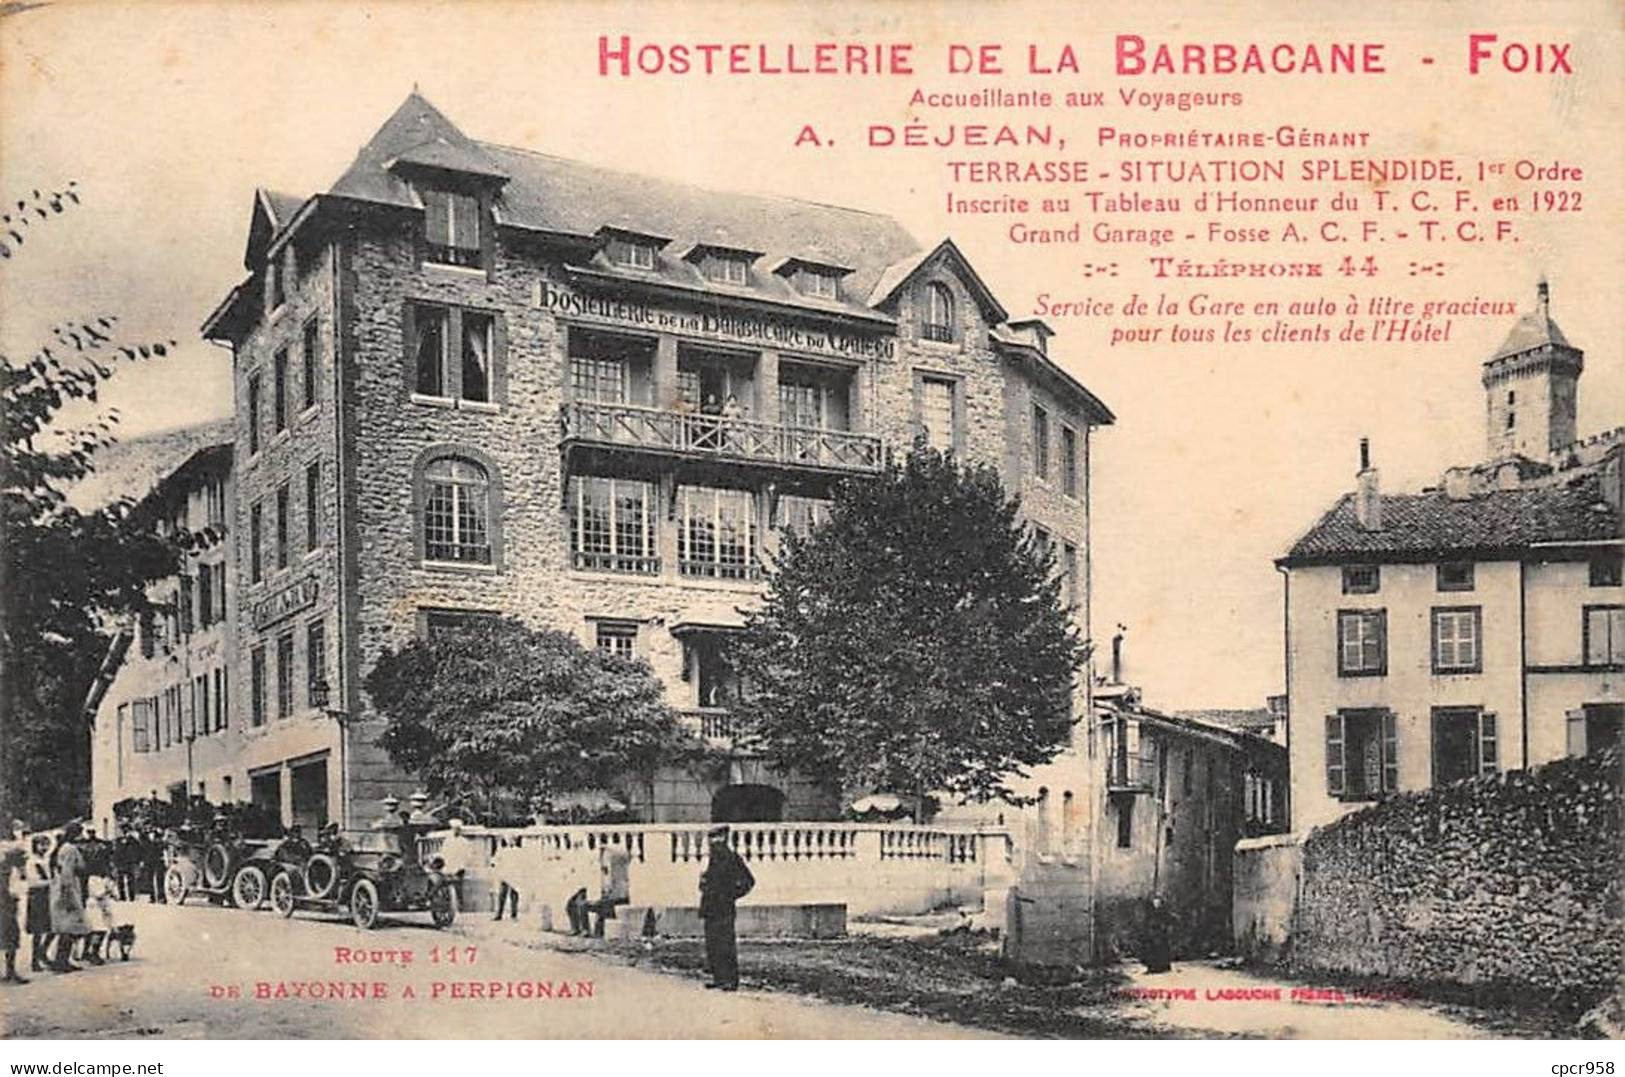 09 - FOIX - SAN34187 - Hostellerie De La Barbacane - Foix